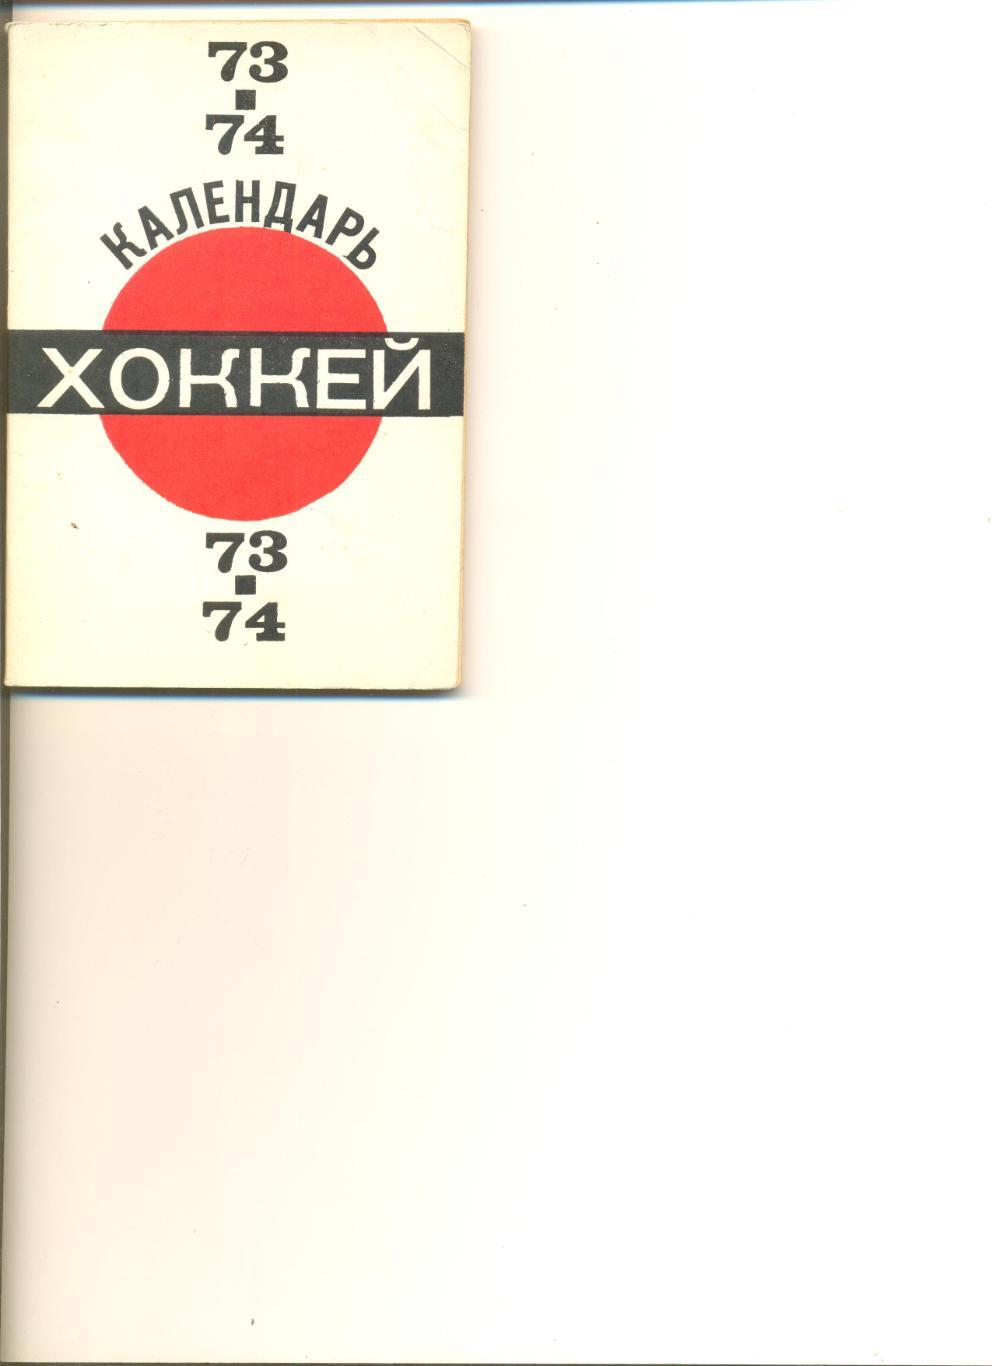 Хоккей 1973-1974 г. Первенство СССР. Изд-во Московская правда. 96 стр.